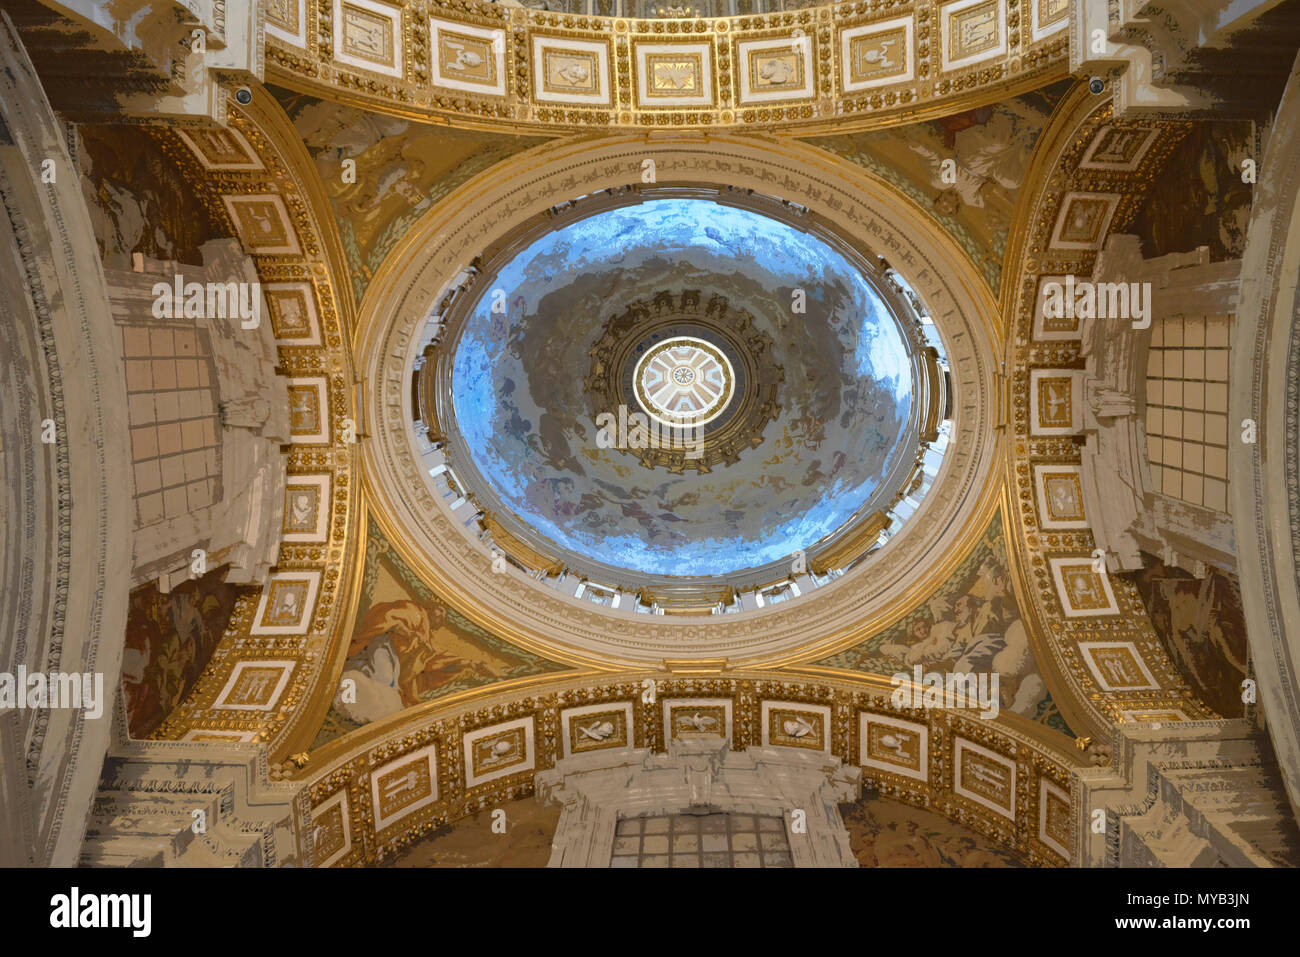 Saint Peter's Basilica, Innenraum, kleine Kuppel (Kuppel) am Ende des nördlichen Seitenschiff (in PS gerendert), Vatikan, Rom, Italien Stockfoto